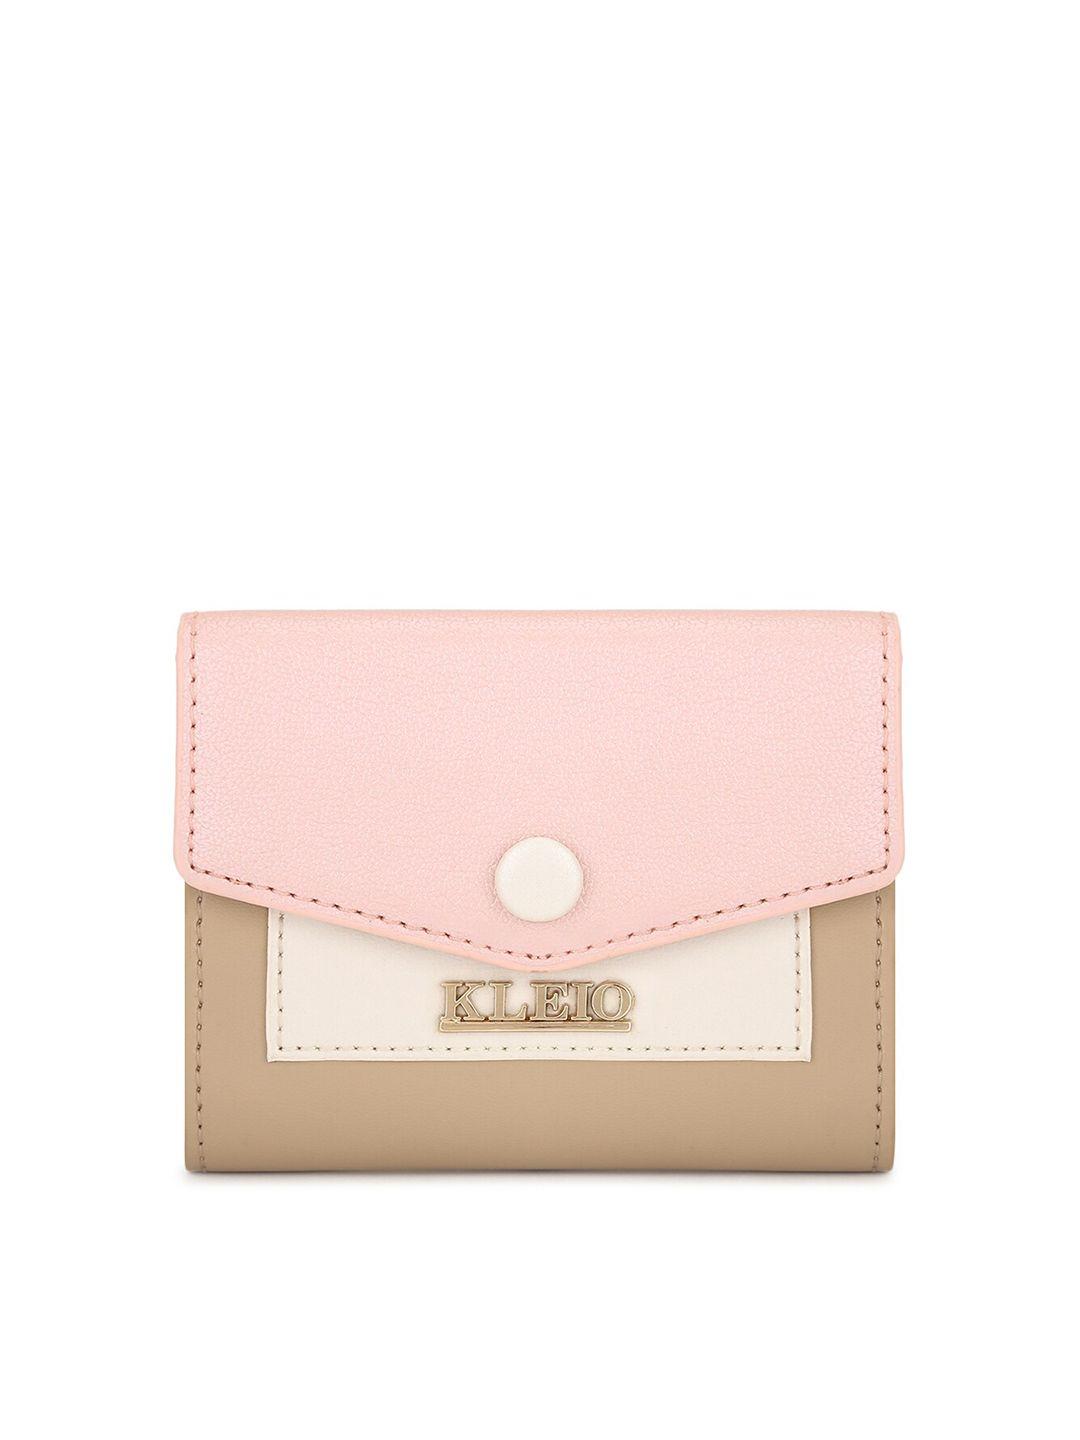 kleio women mini color-blocked trifold wallet